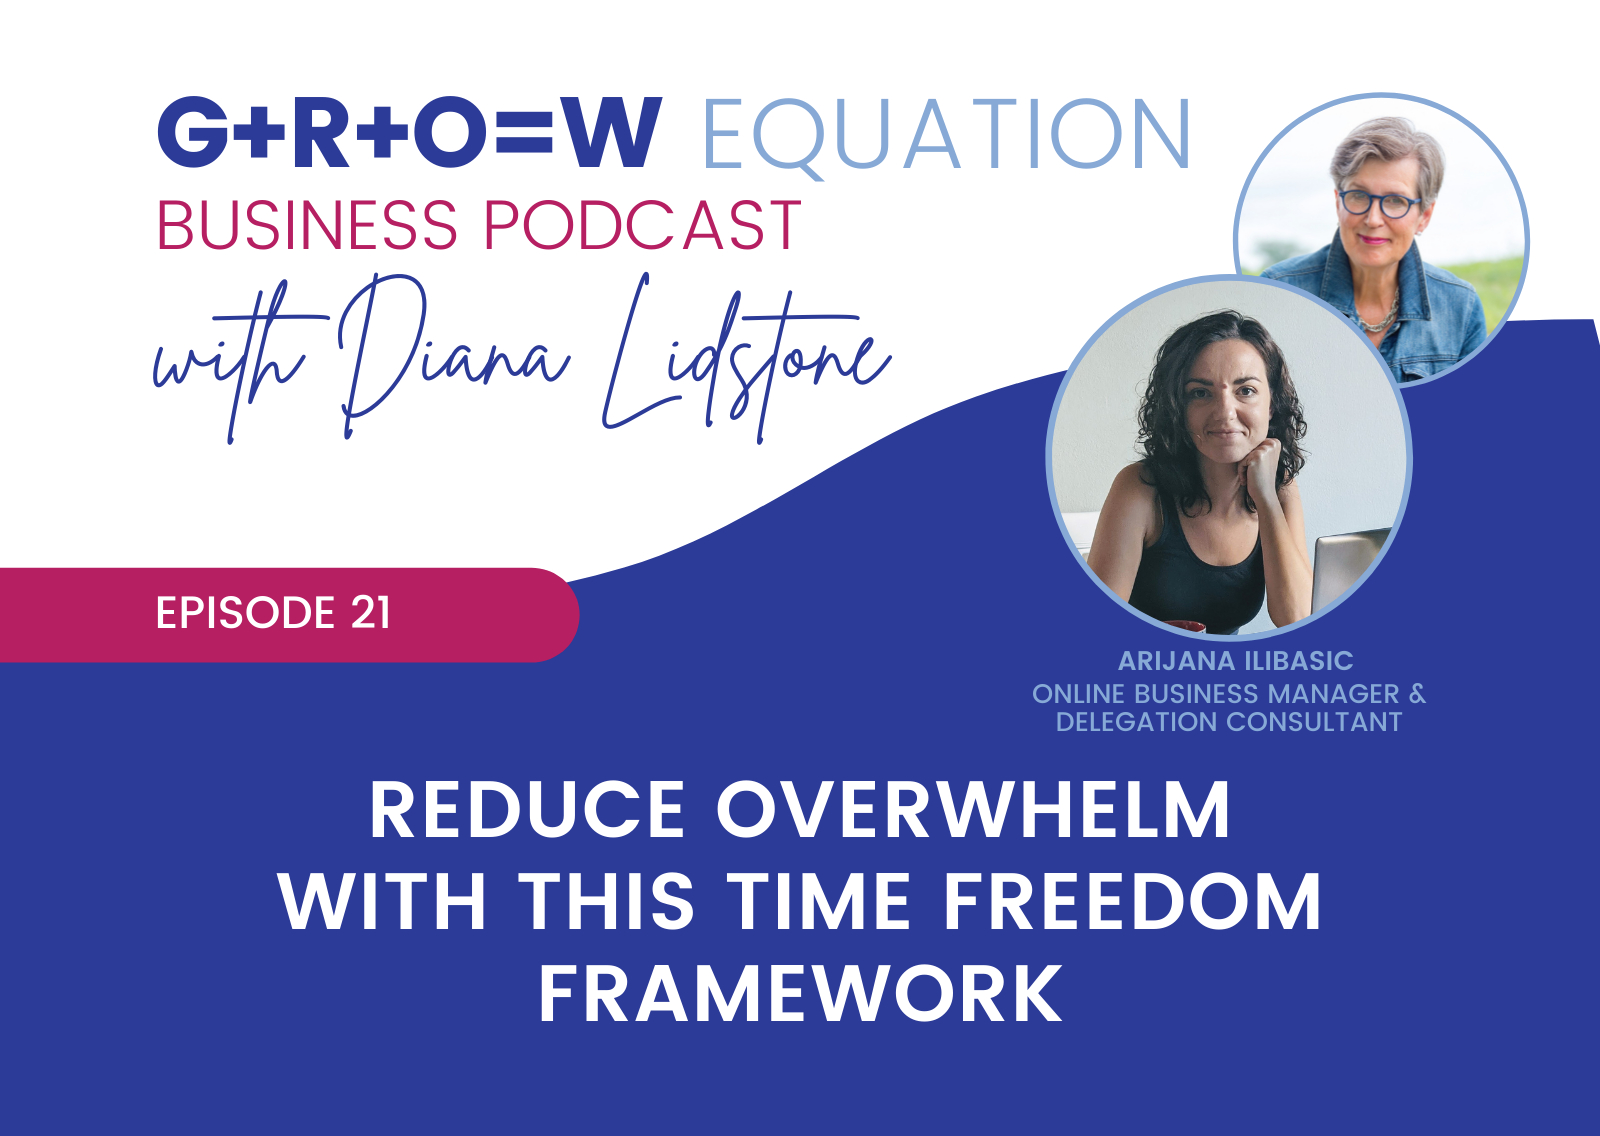 The GROW Equation Podcast with Arijana Ilibasic